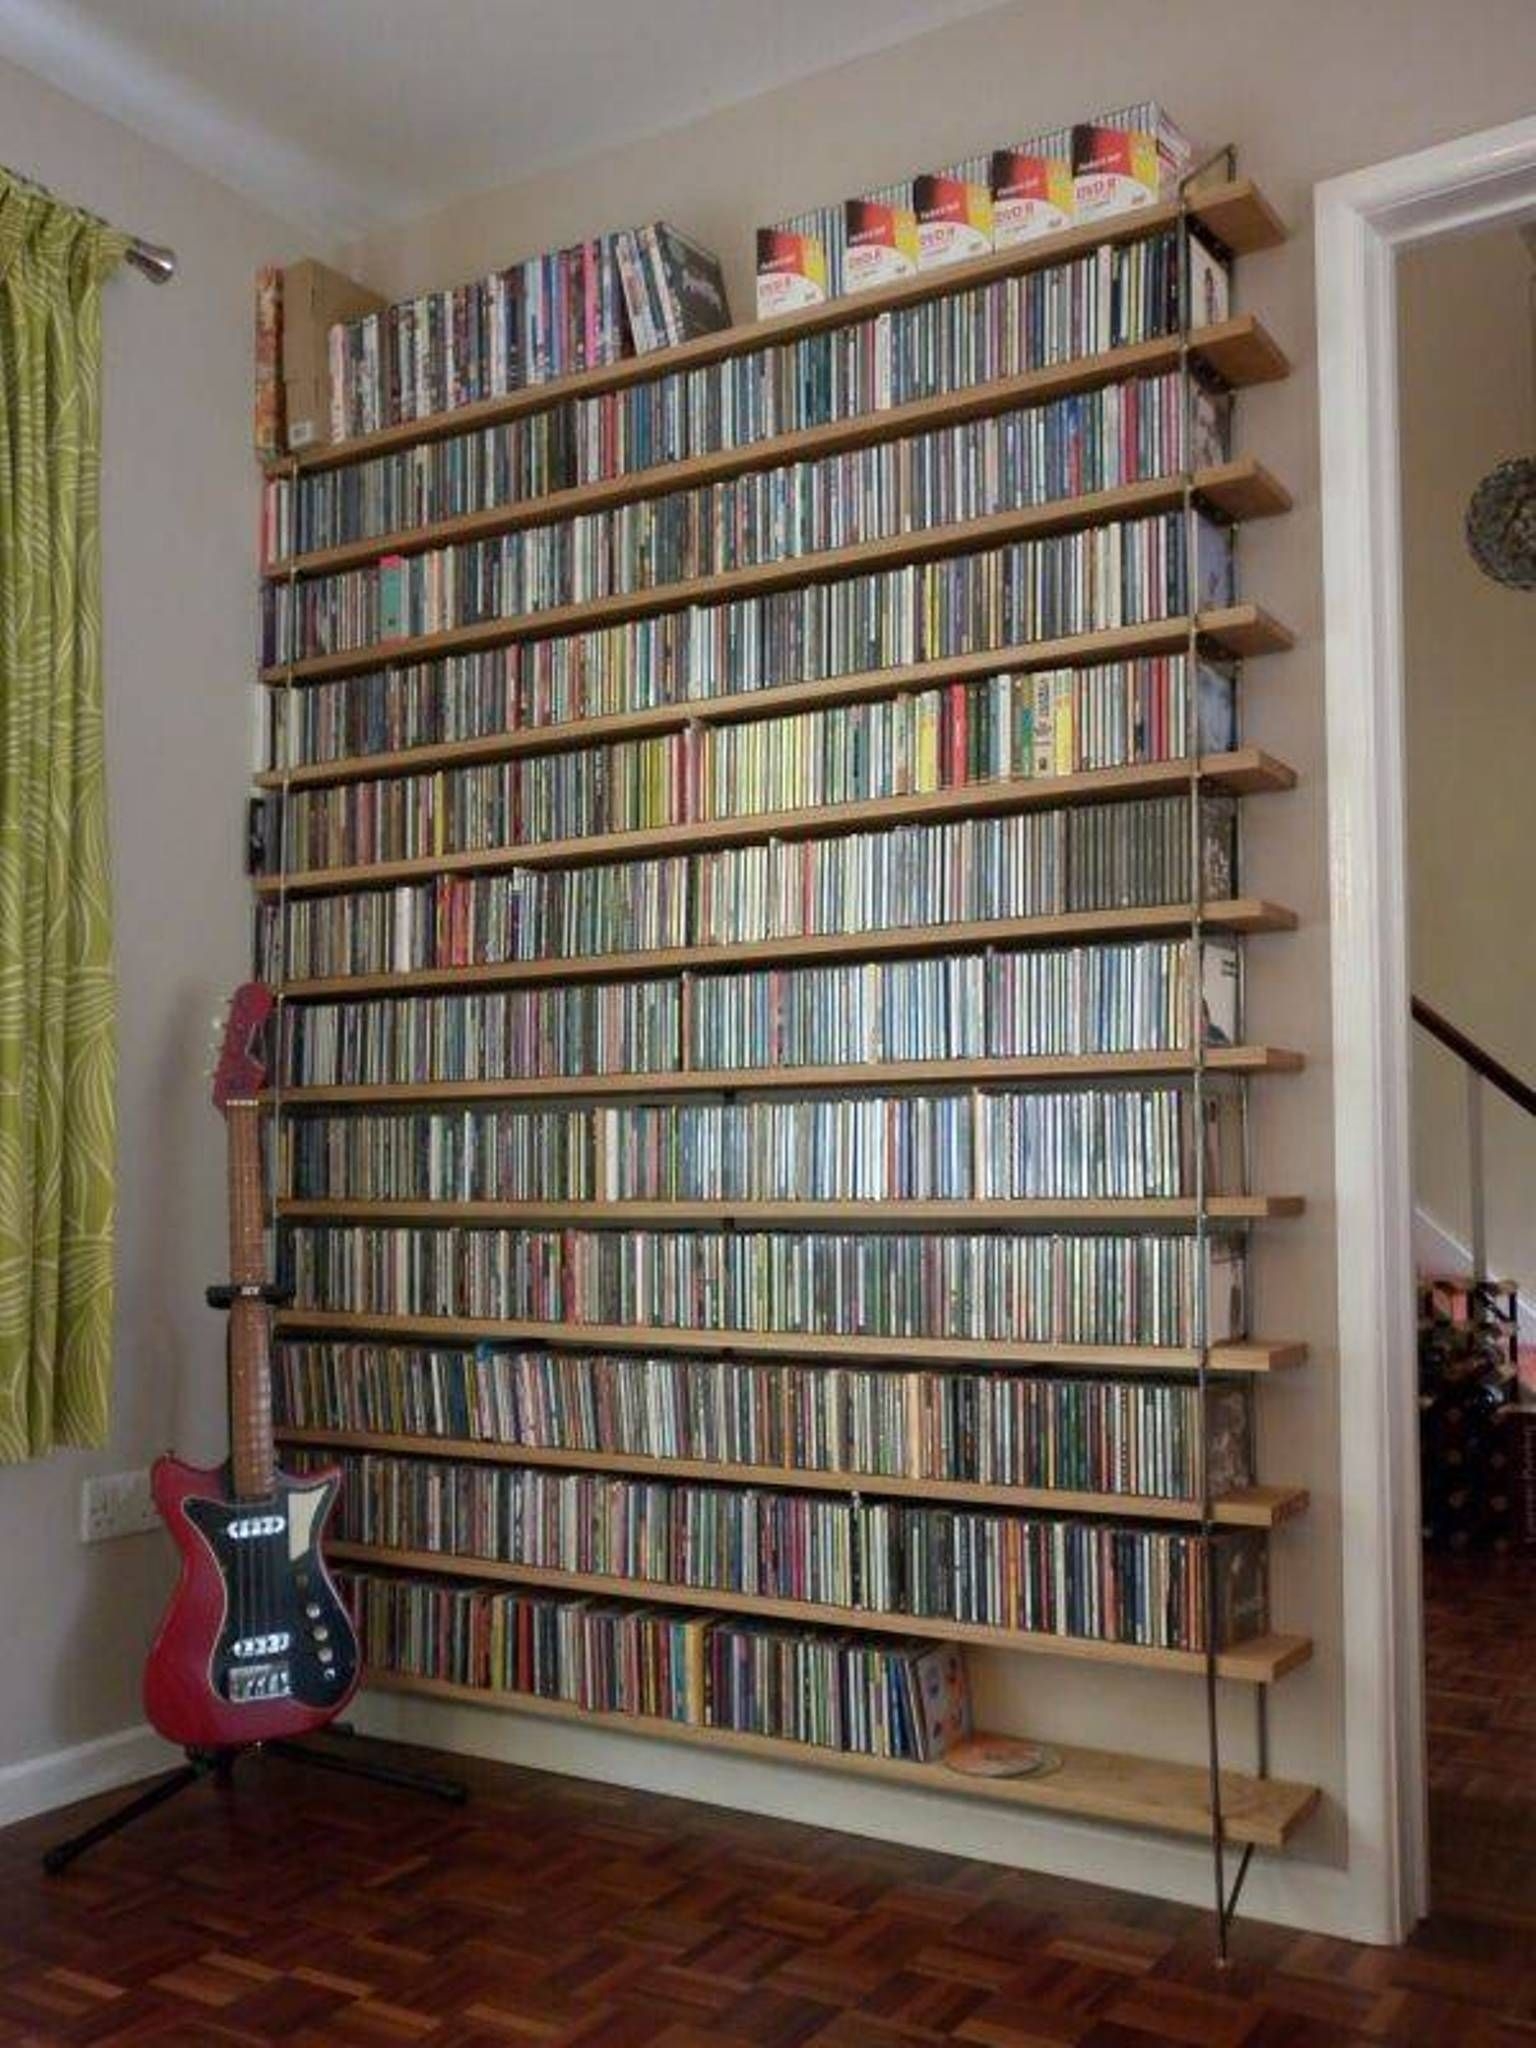 Media storage cd racks dvd shelves bookshelves and furniture by